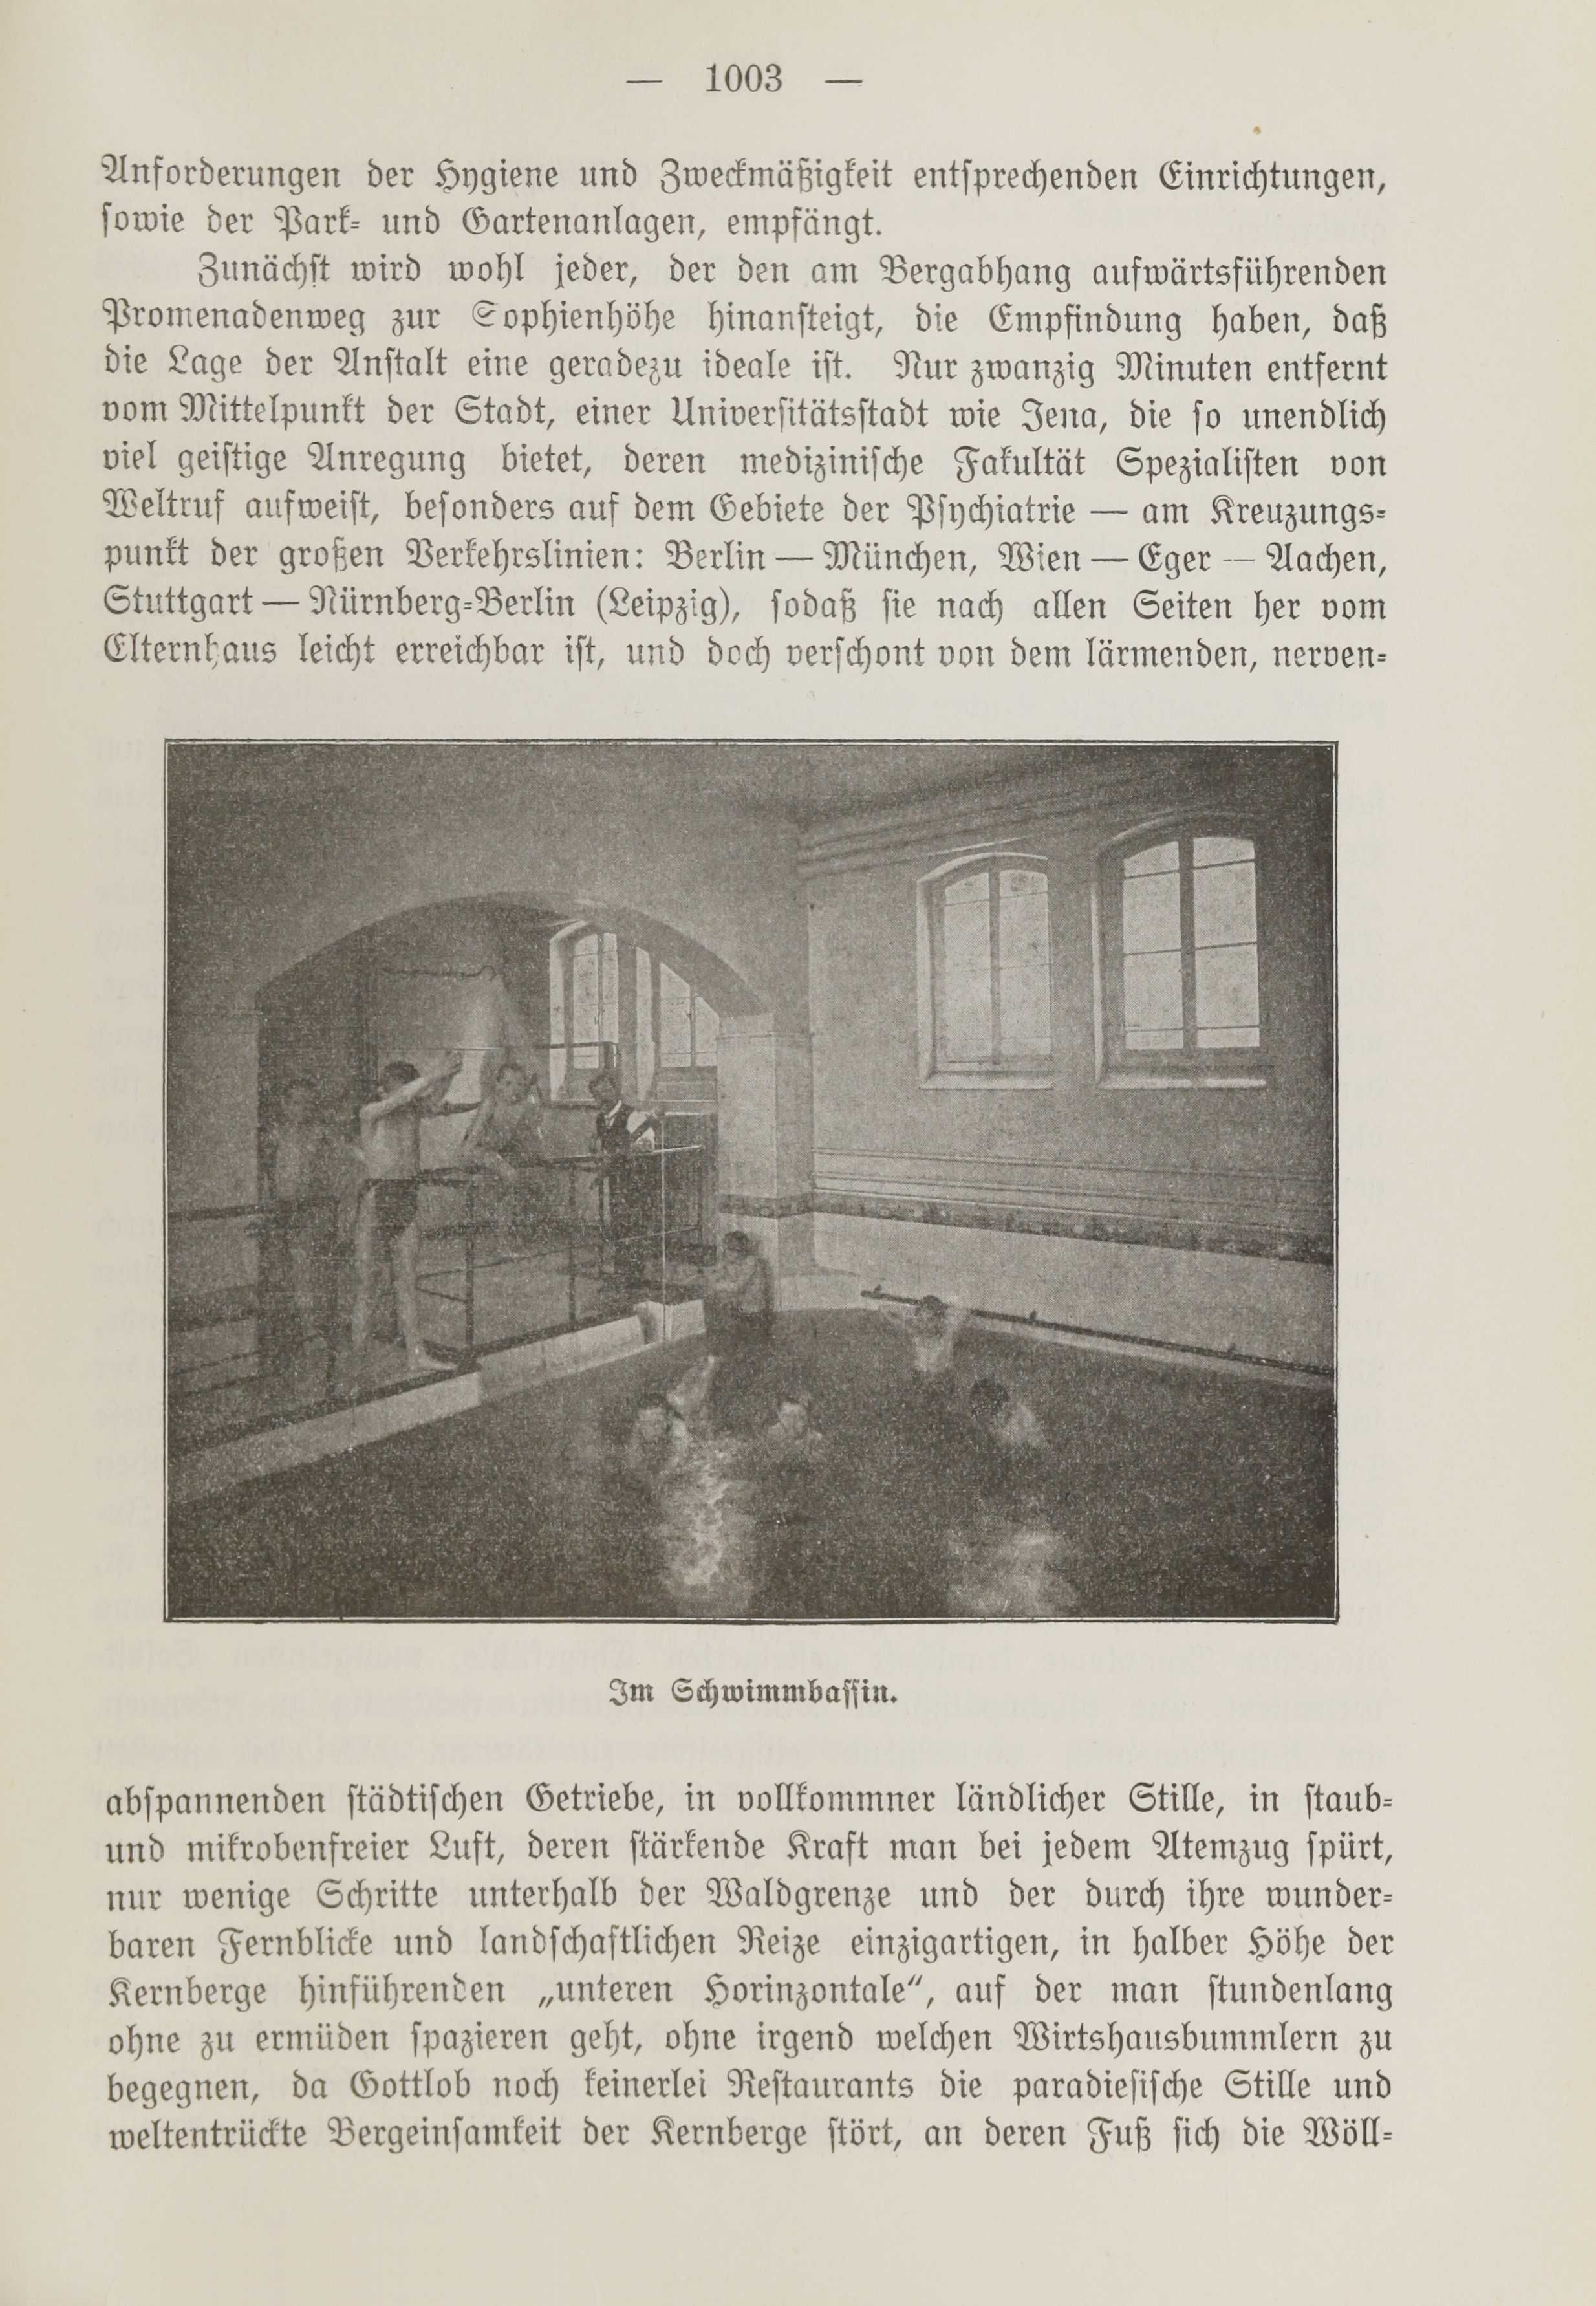 Deutsche Monatsschrift für Russland [1] (1912) | 1011. (1003) Main body of text